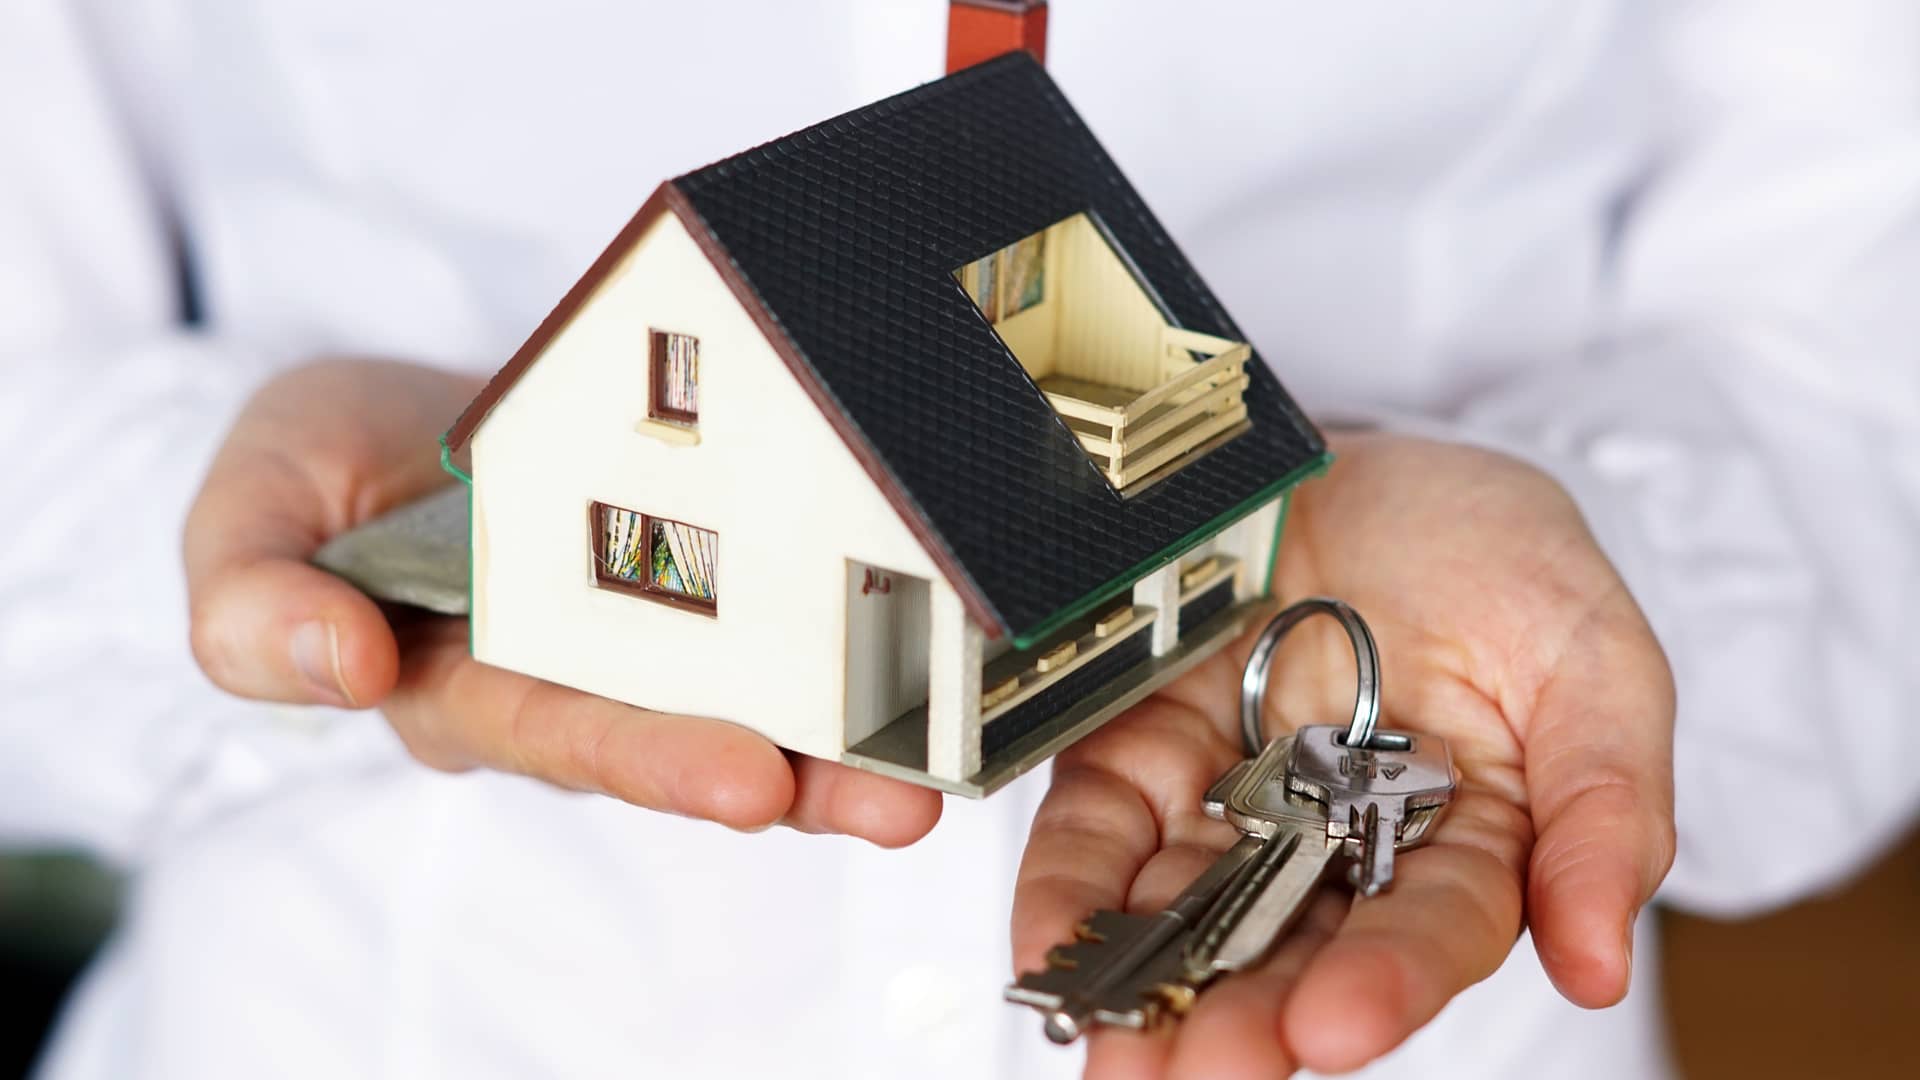 Persona sujeta una maqueta de una casa mientras entrega las llaves de una casa que ha vendido recientemente simbolizando el impuesto de plusvalía